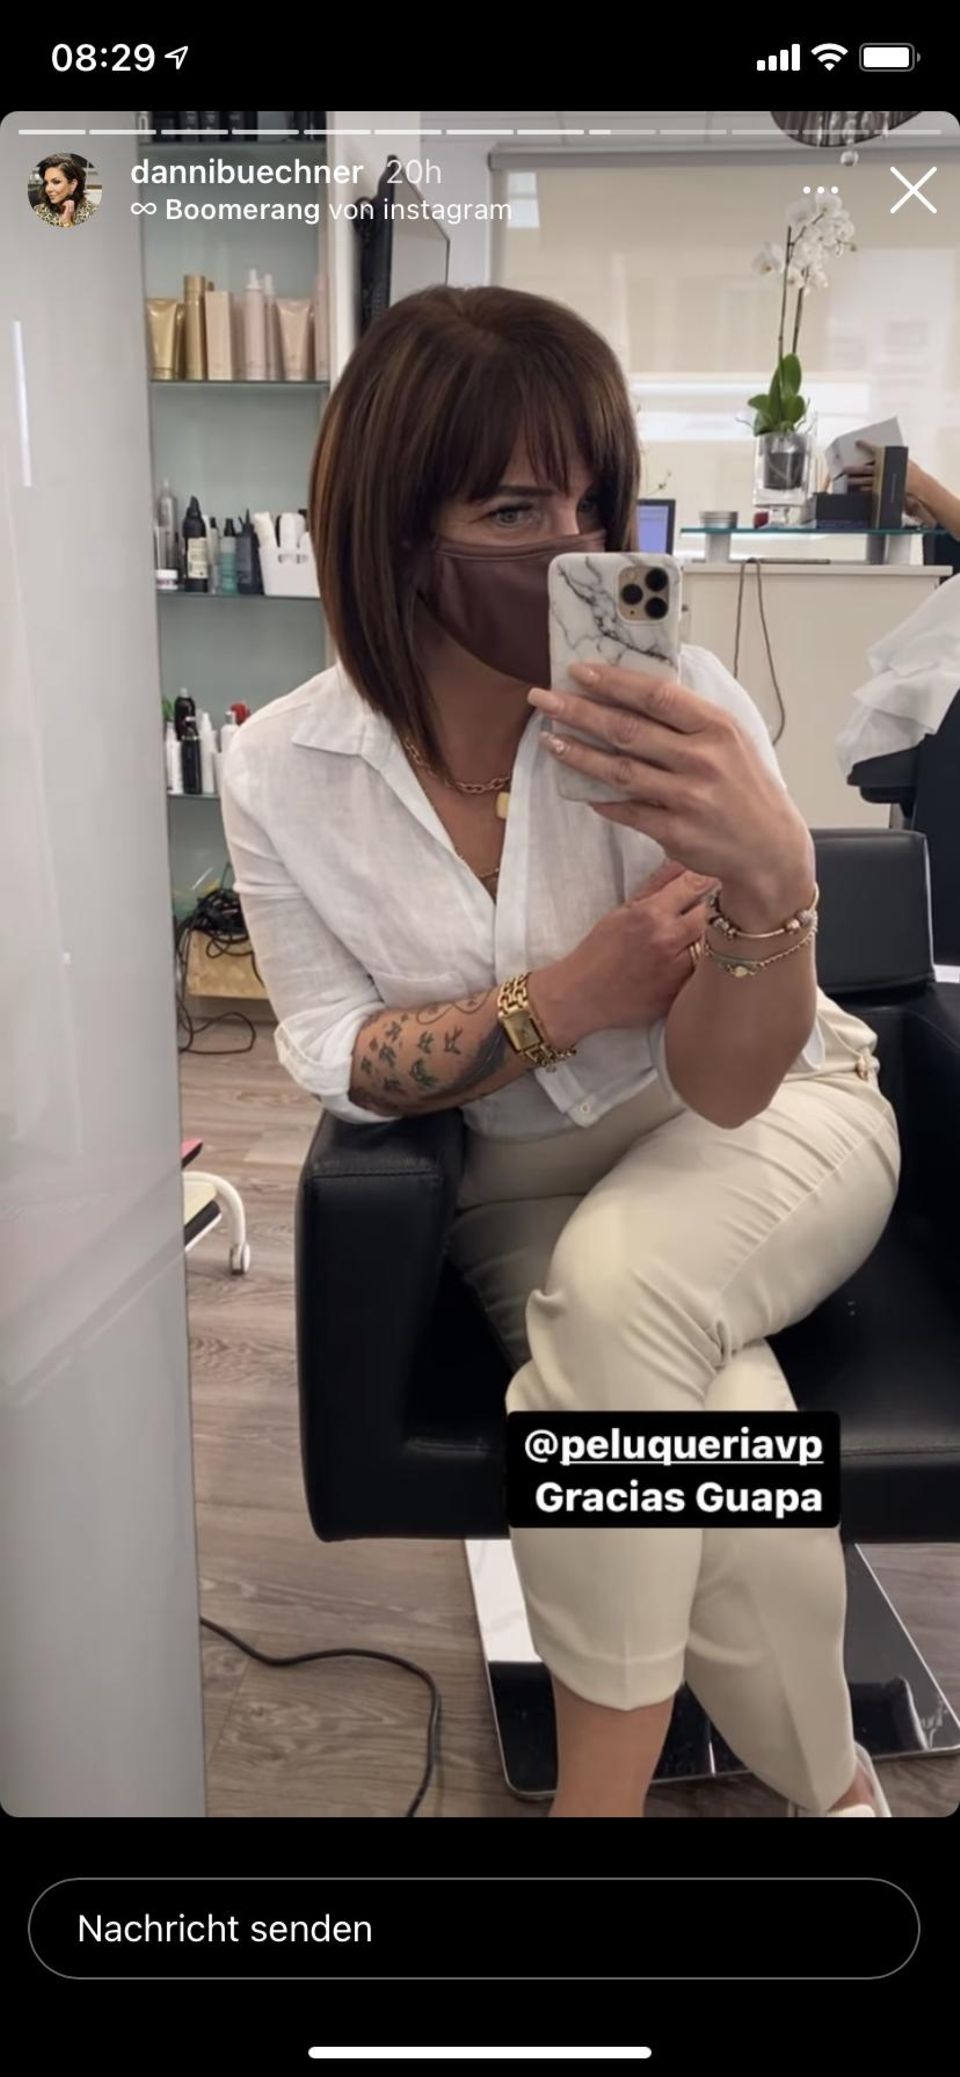 In ihrer Instagram Story postet Danni Büchner ein Foto ihrer neuen Frisur.